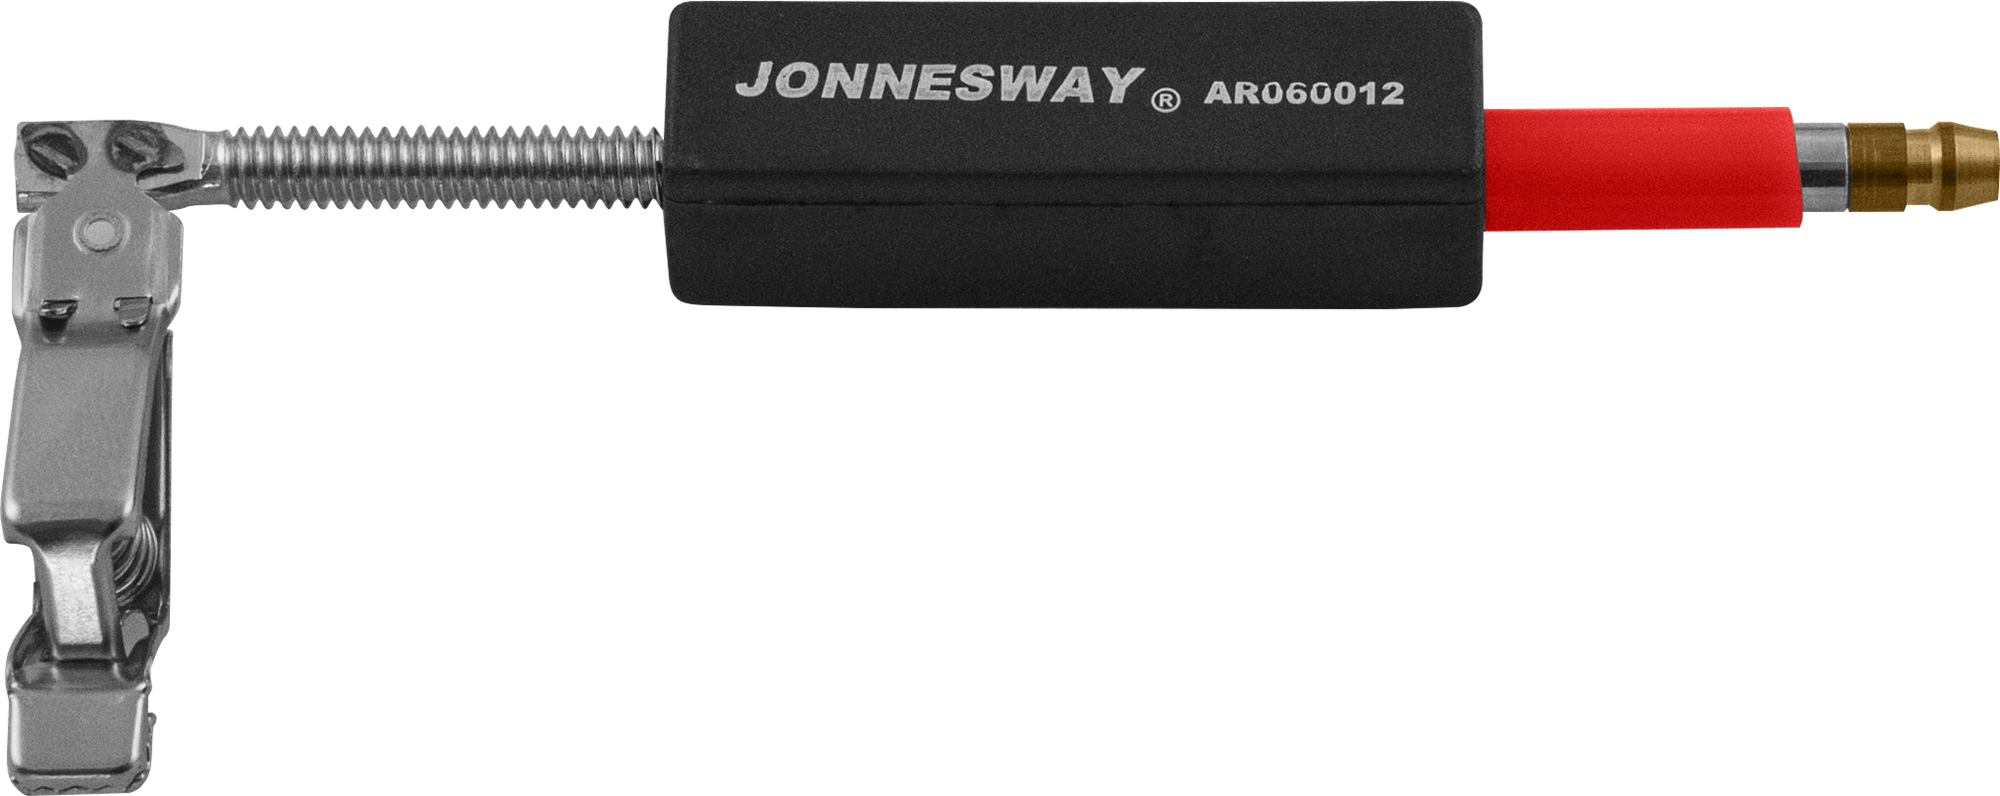 Тестер искрового зазора систем зажигания регулируемый Jonnesway  AR060012_0